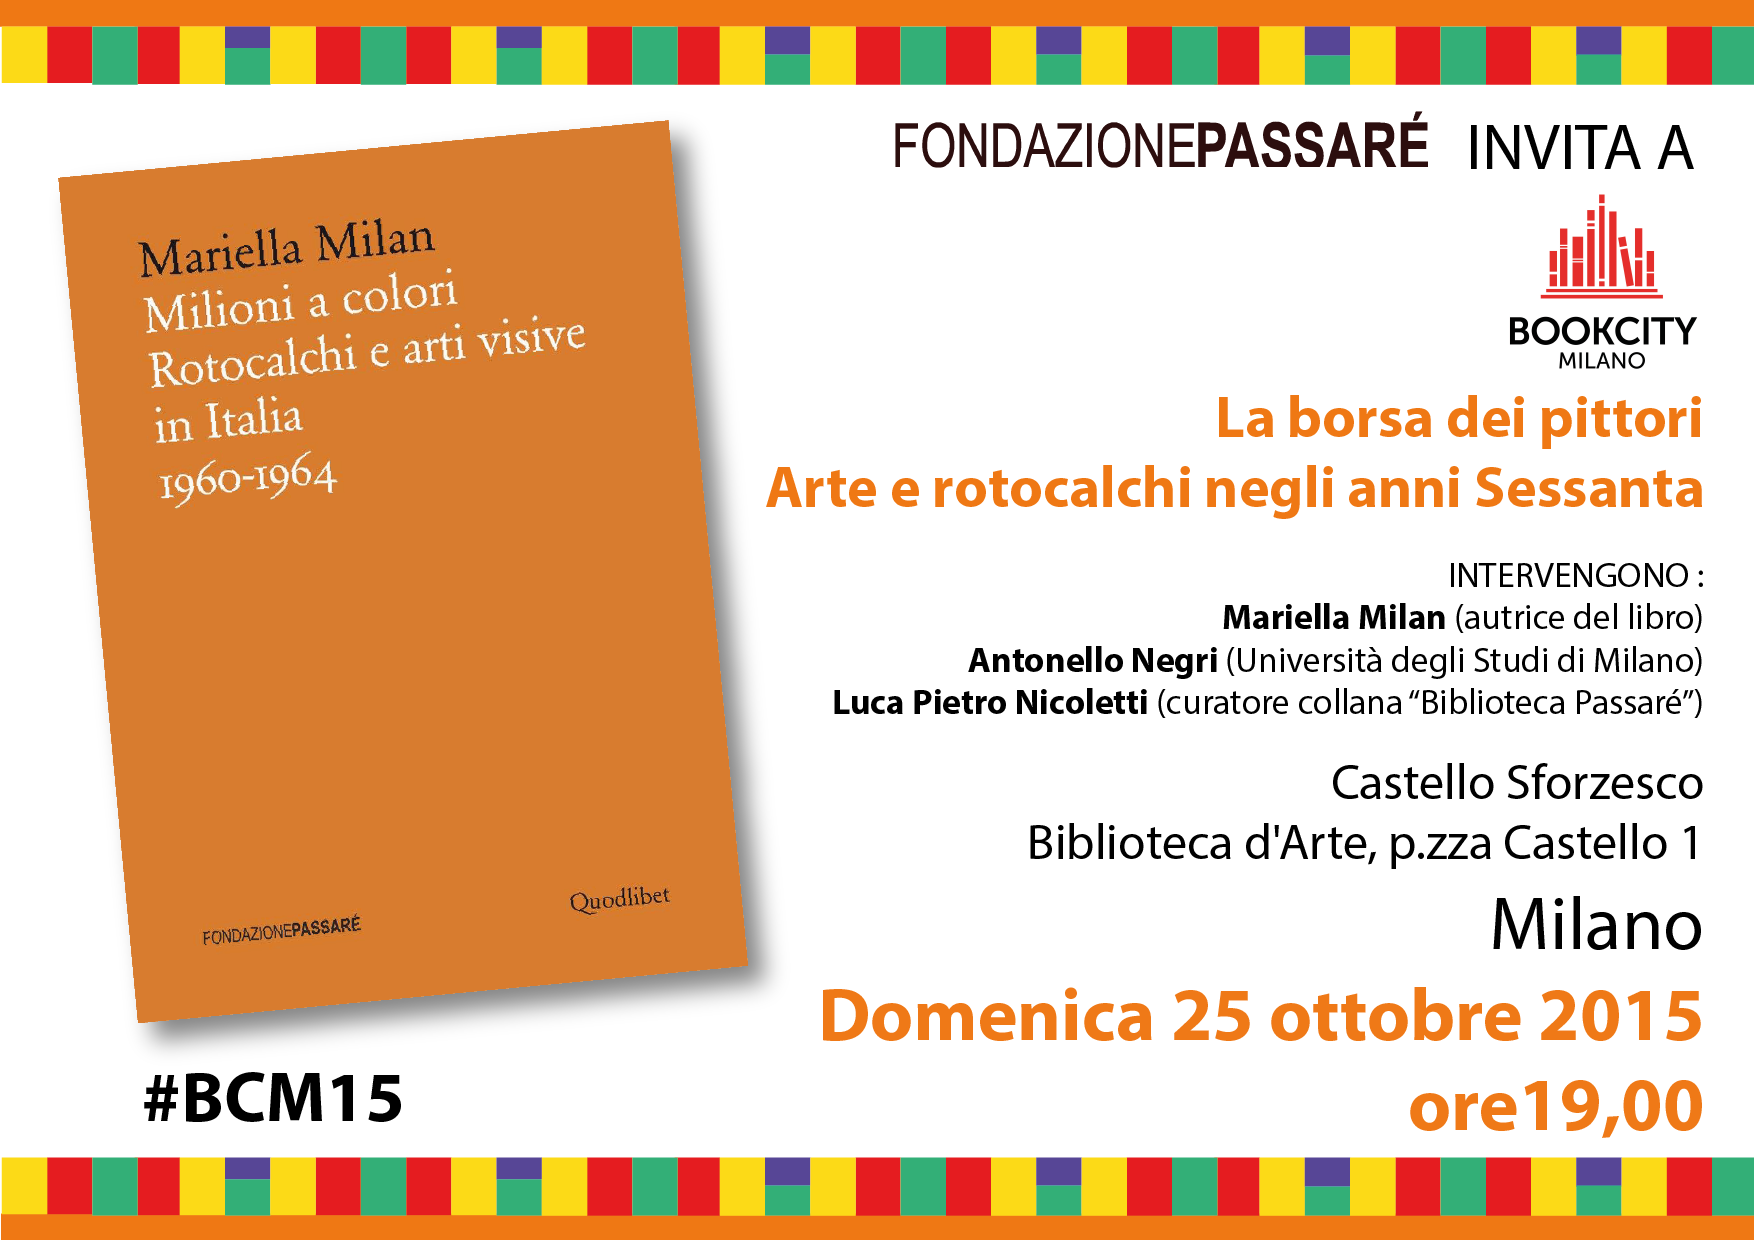 Book city 2015, invito, Milioni a colori, Fondazione Passaré, Biblioteca Passaré